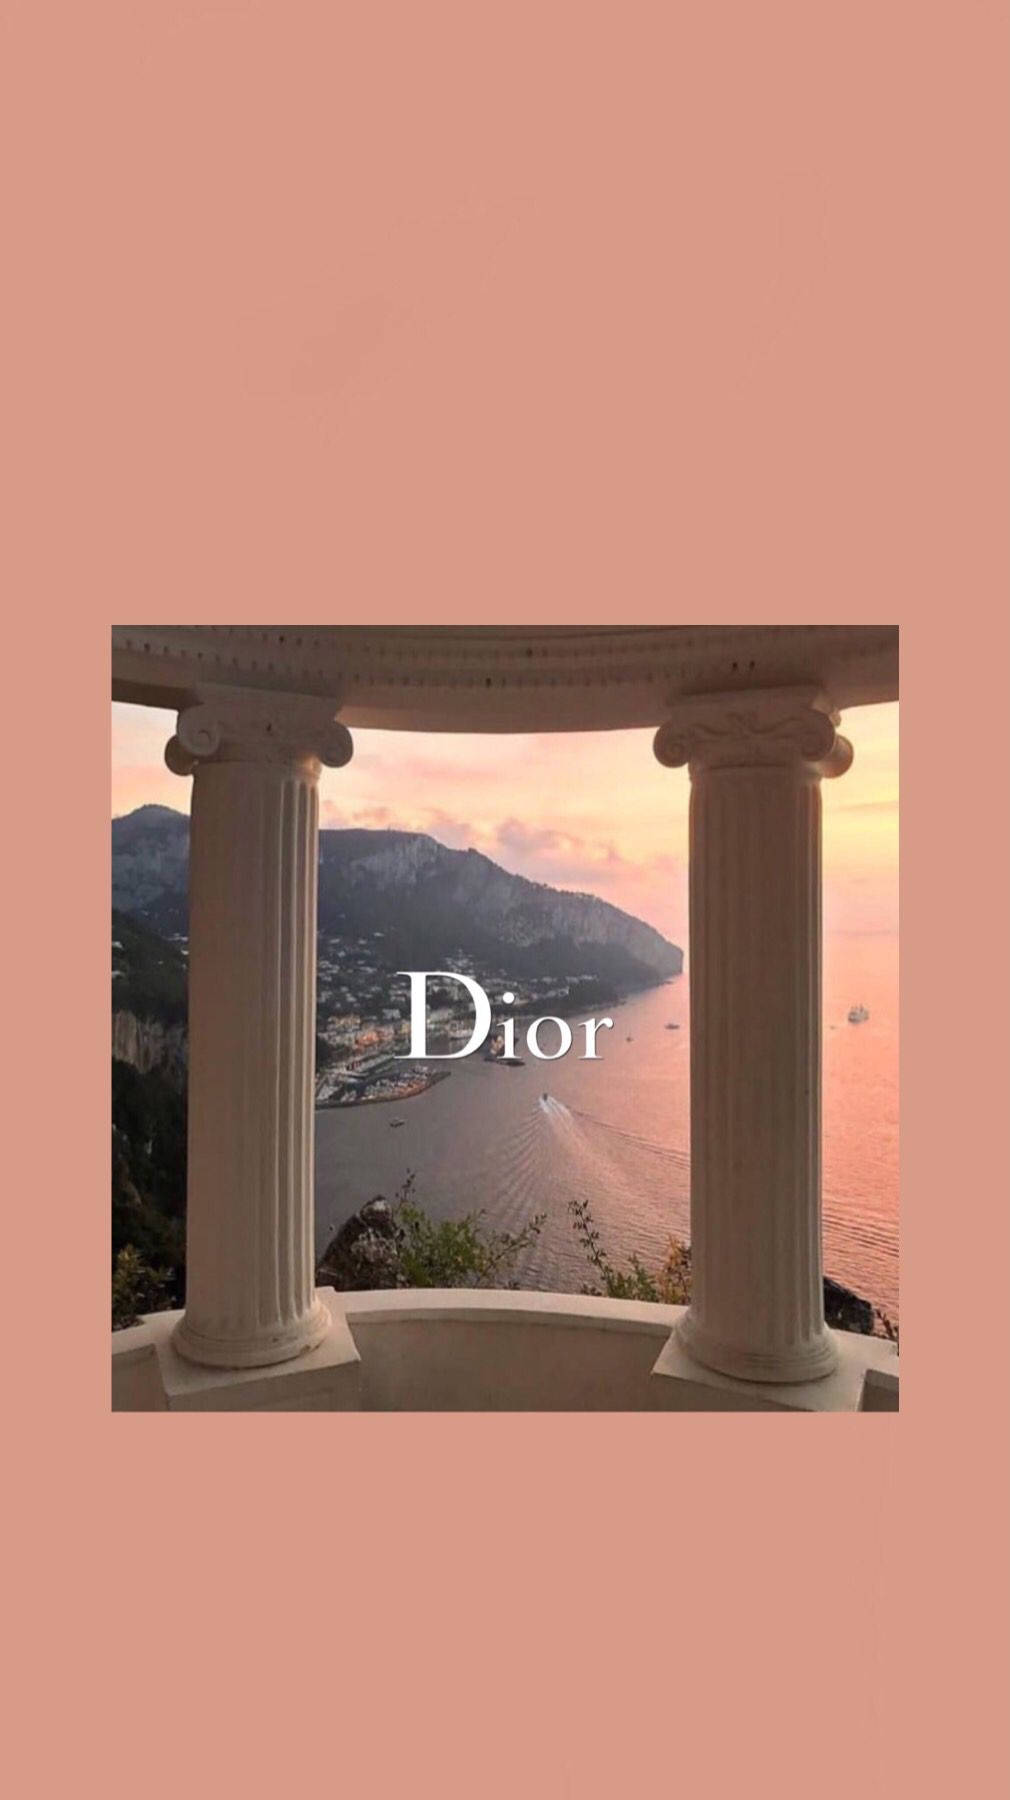 Dior Peach Pillars Background